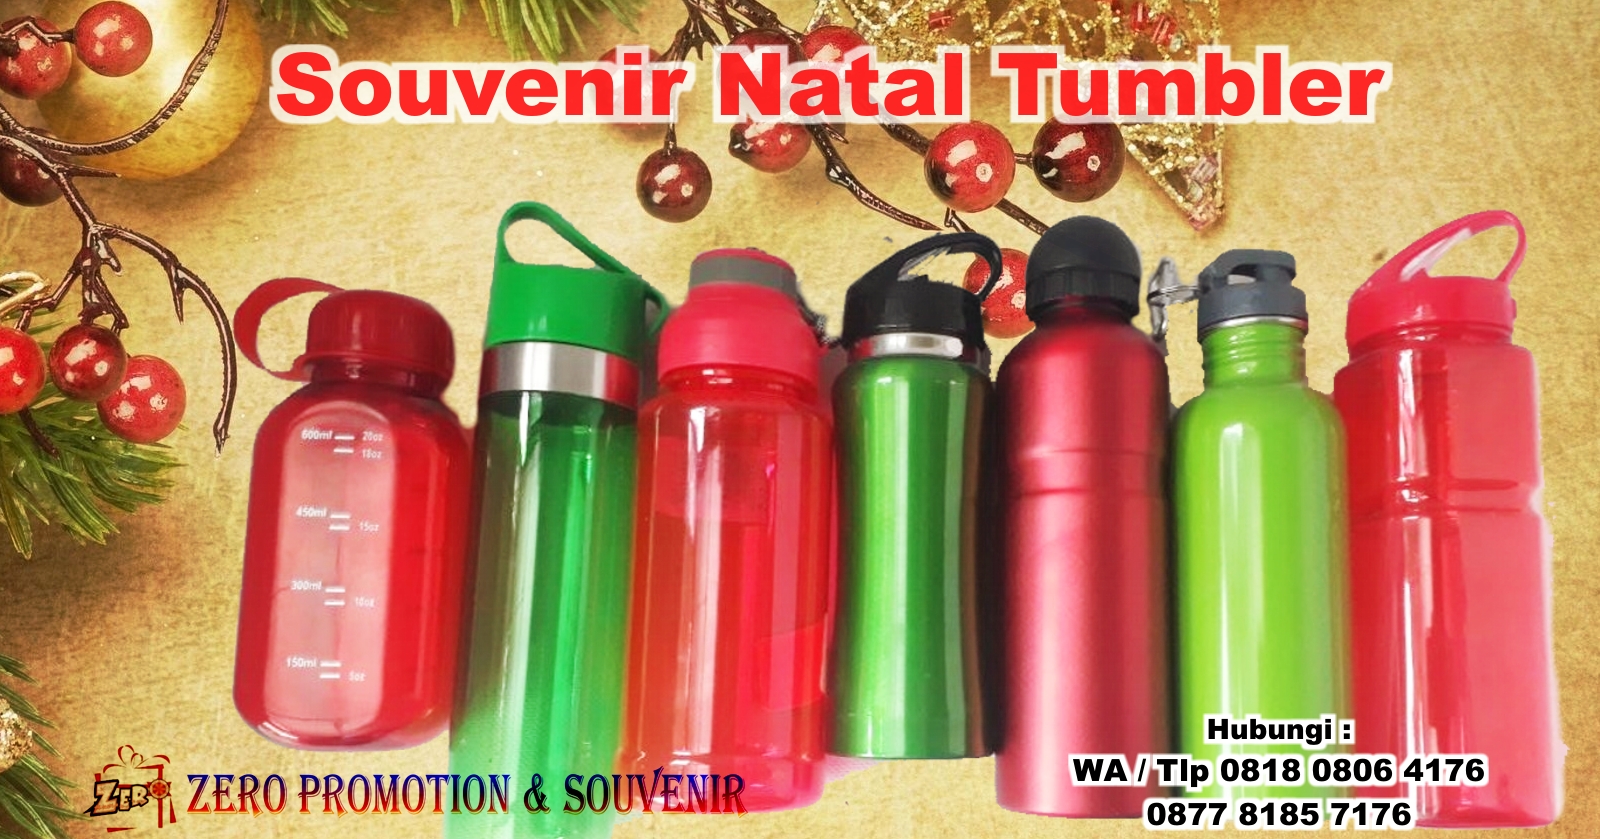 Souvenir Natal Tumbler - Untuk Acara Natal & sekolah 